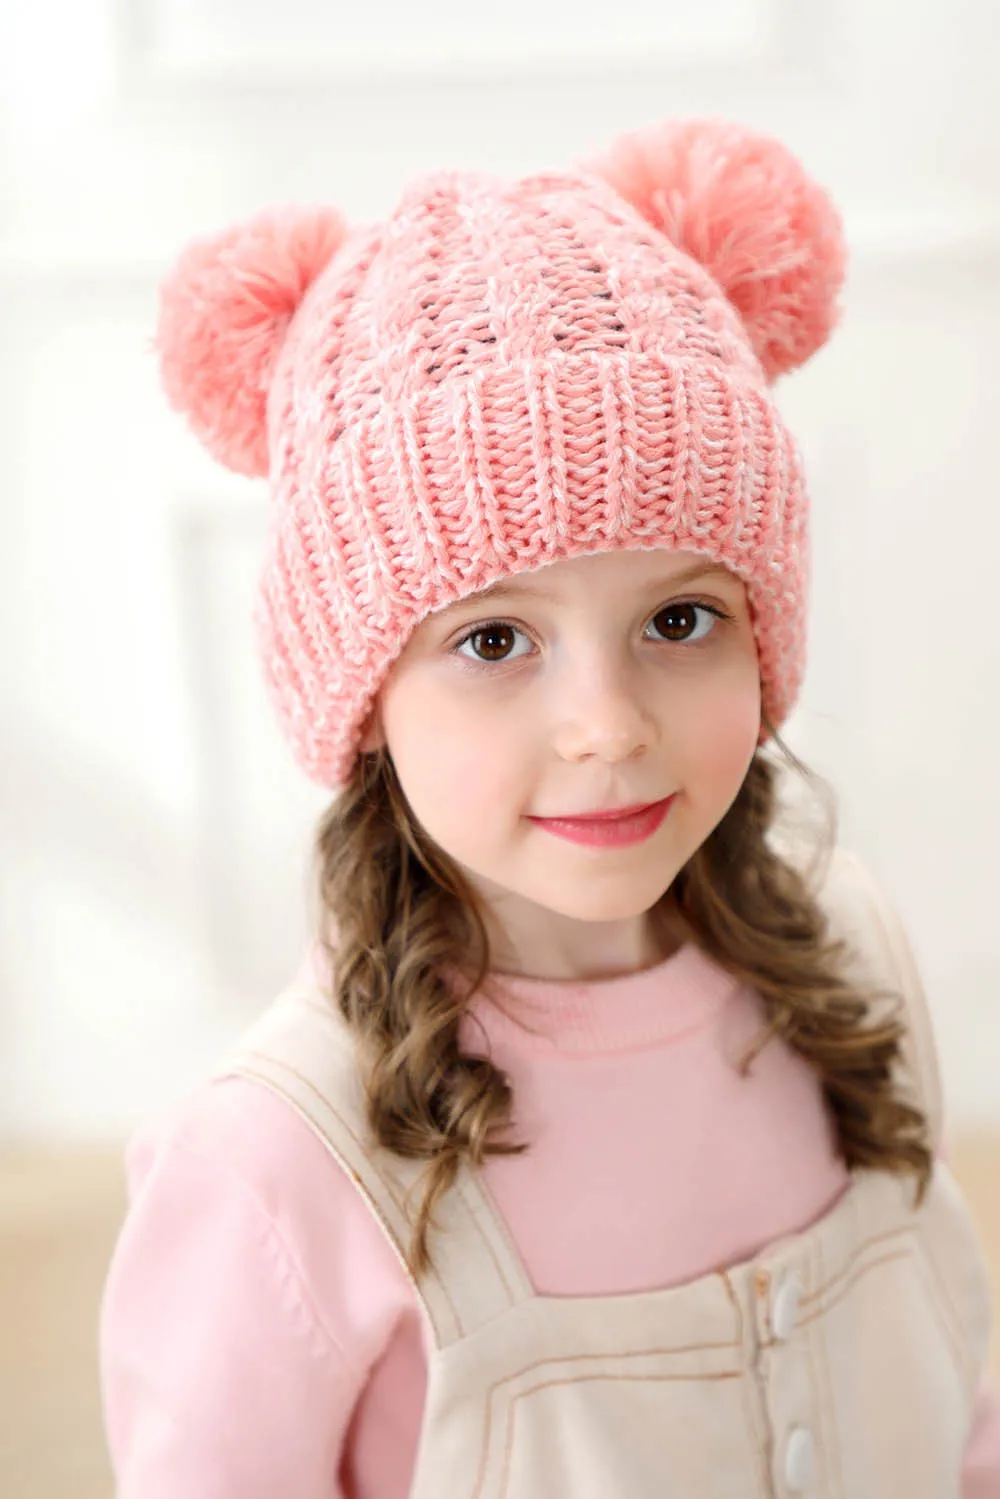 Зимняя шапка для детей, детская вязаная шерстяная шапка с помпоном, милая шапка для девочек и мальчиков, повседневные однотонные детские шапки для девочек, детские шапки